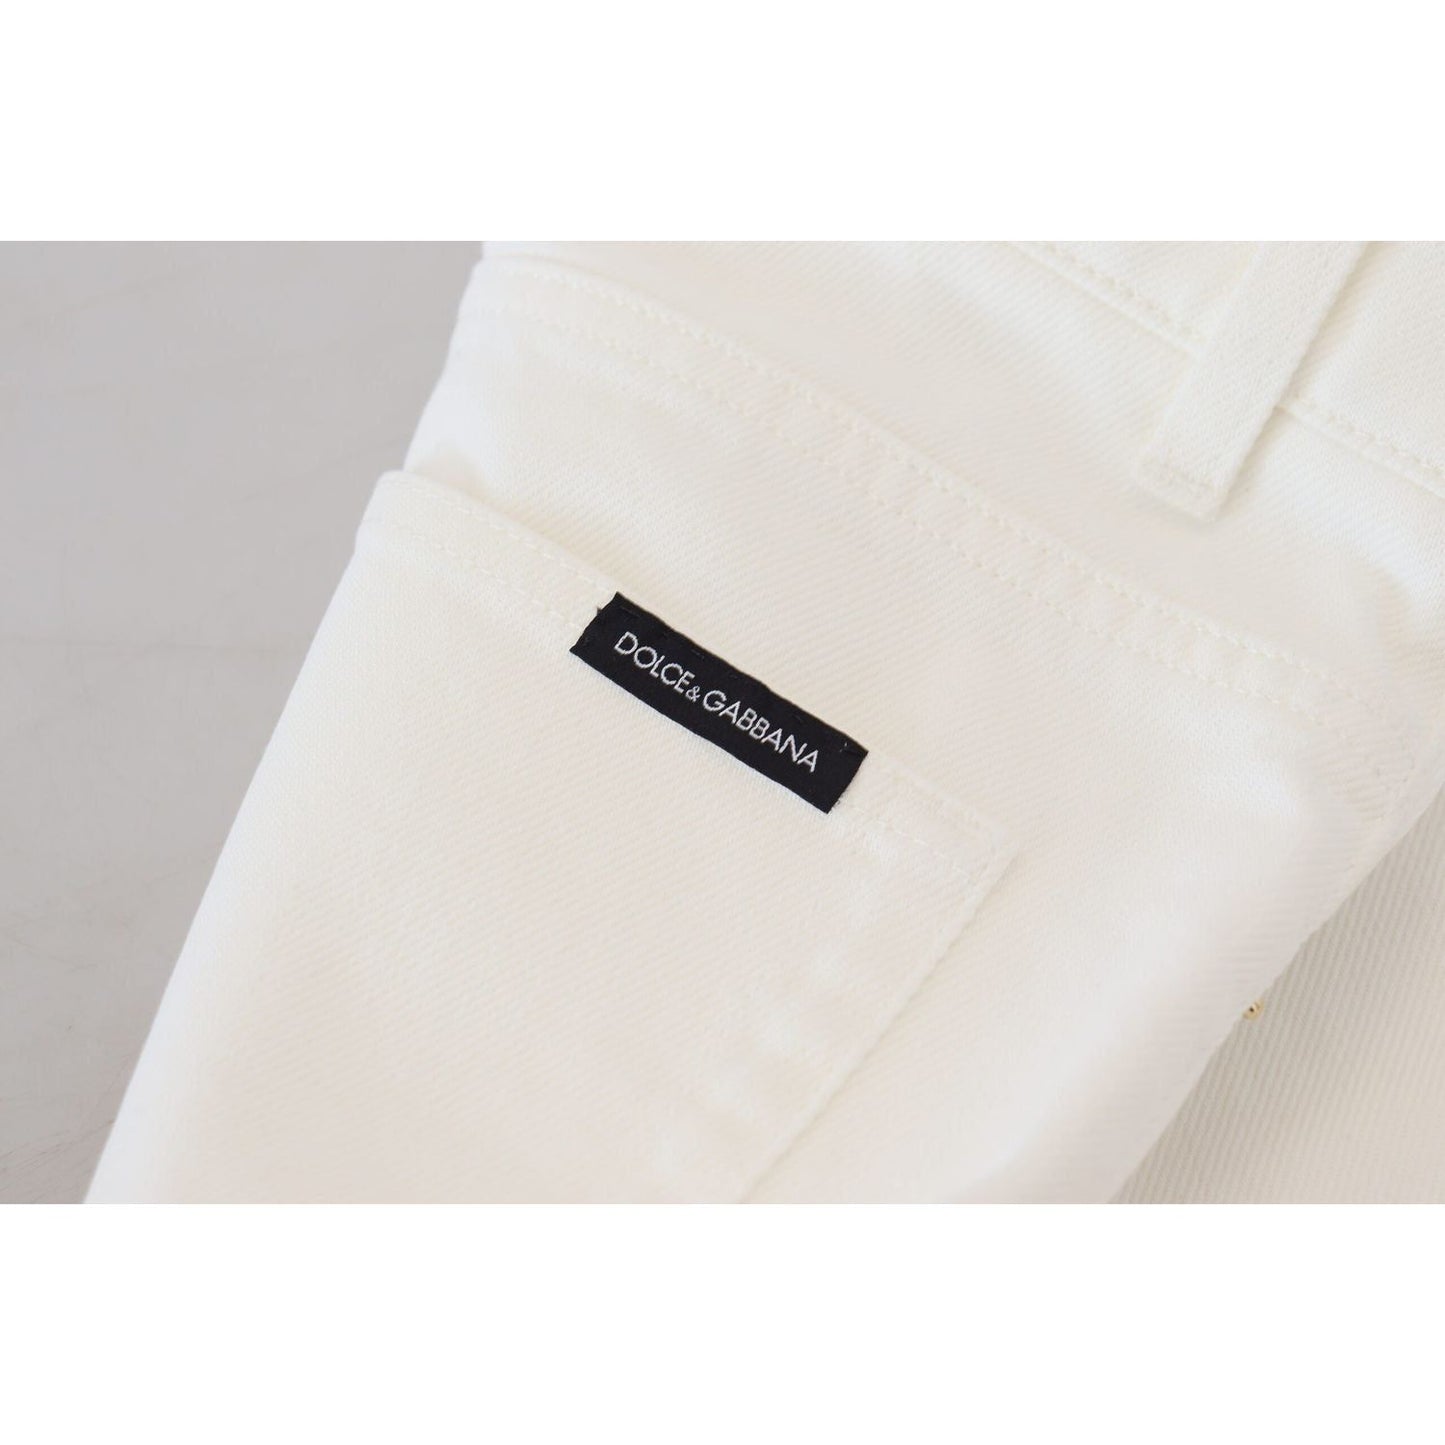 Dolce & GabbanaSvelte High Waist Slim Jeans in Off WhiteMcRichard Designer Brands£369.00